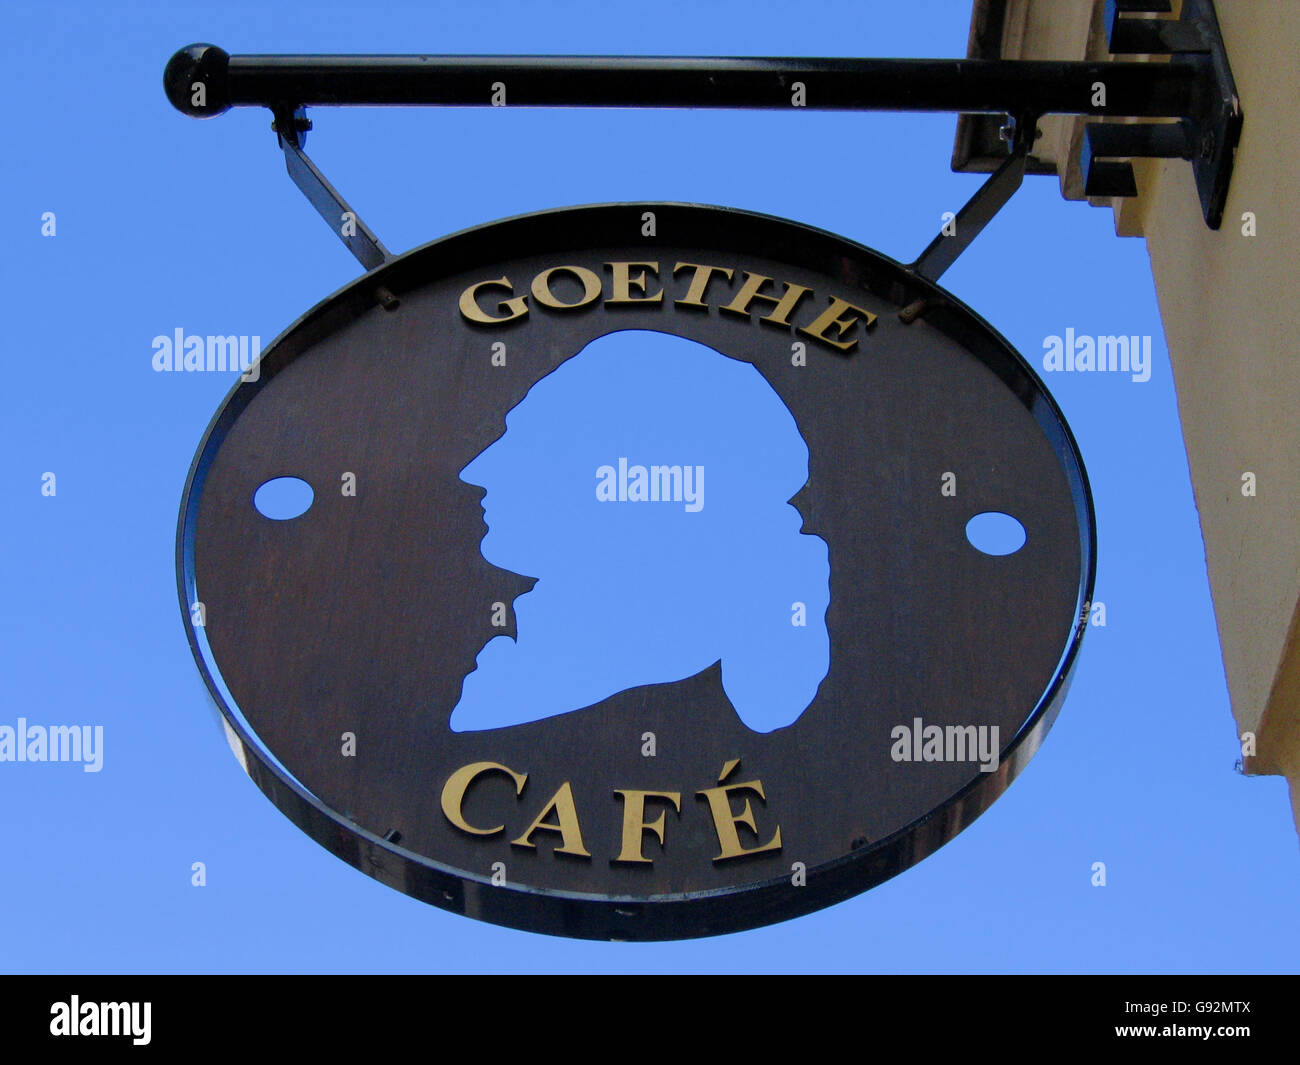 Signe de la Café Goethe à Weimar, Allemagne contre un ciel bleu clair Banque D'Images